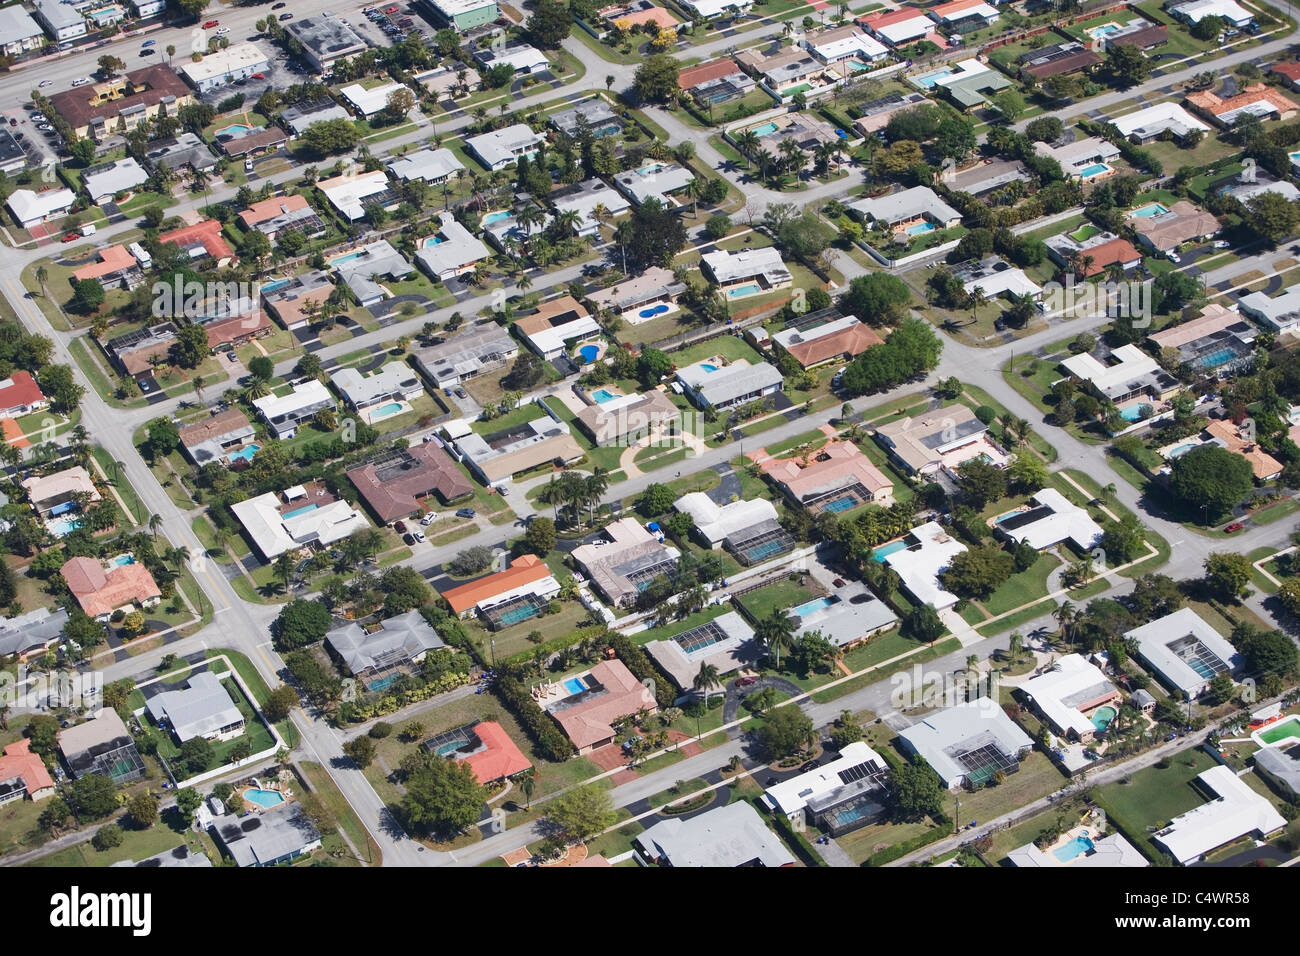 USA,Florida,Miami,Aerial view of suburban residential district Stock Photo